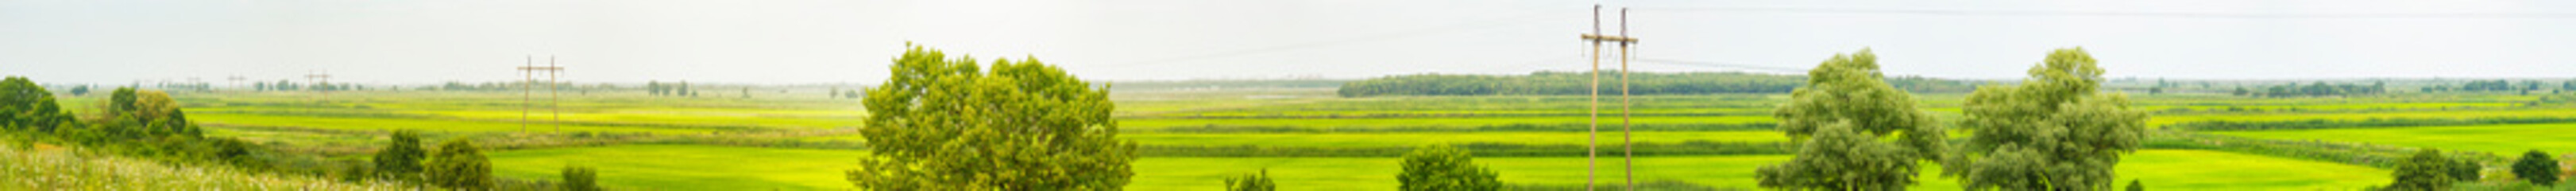 Panorama of rice fields, broken by rectangular checks